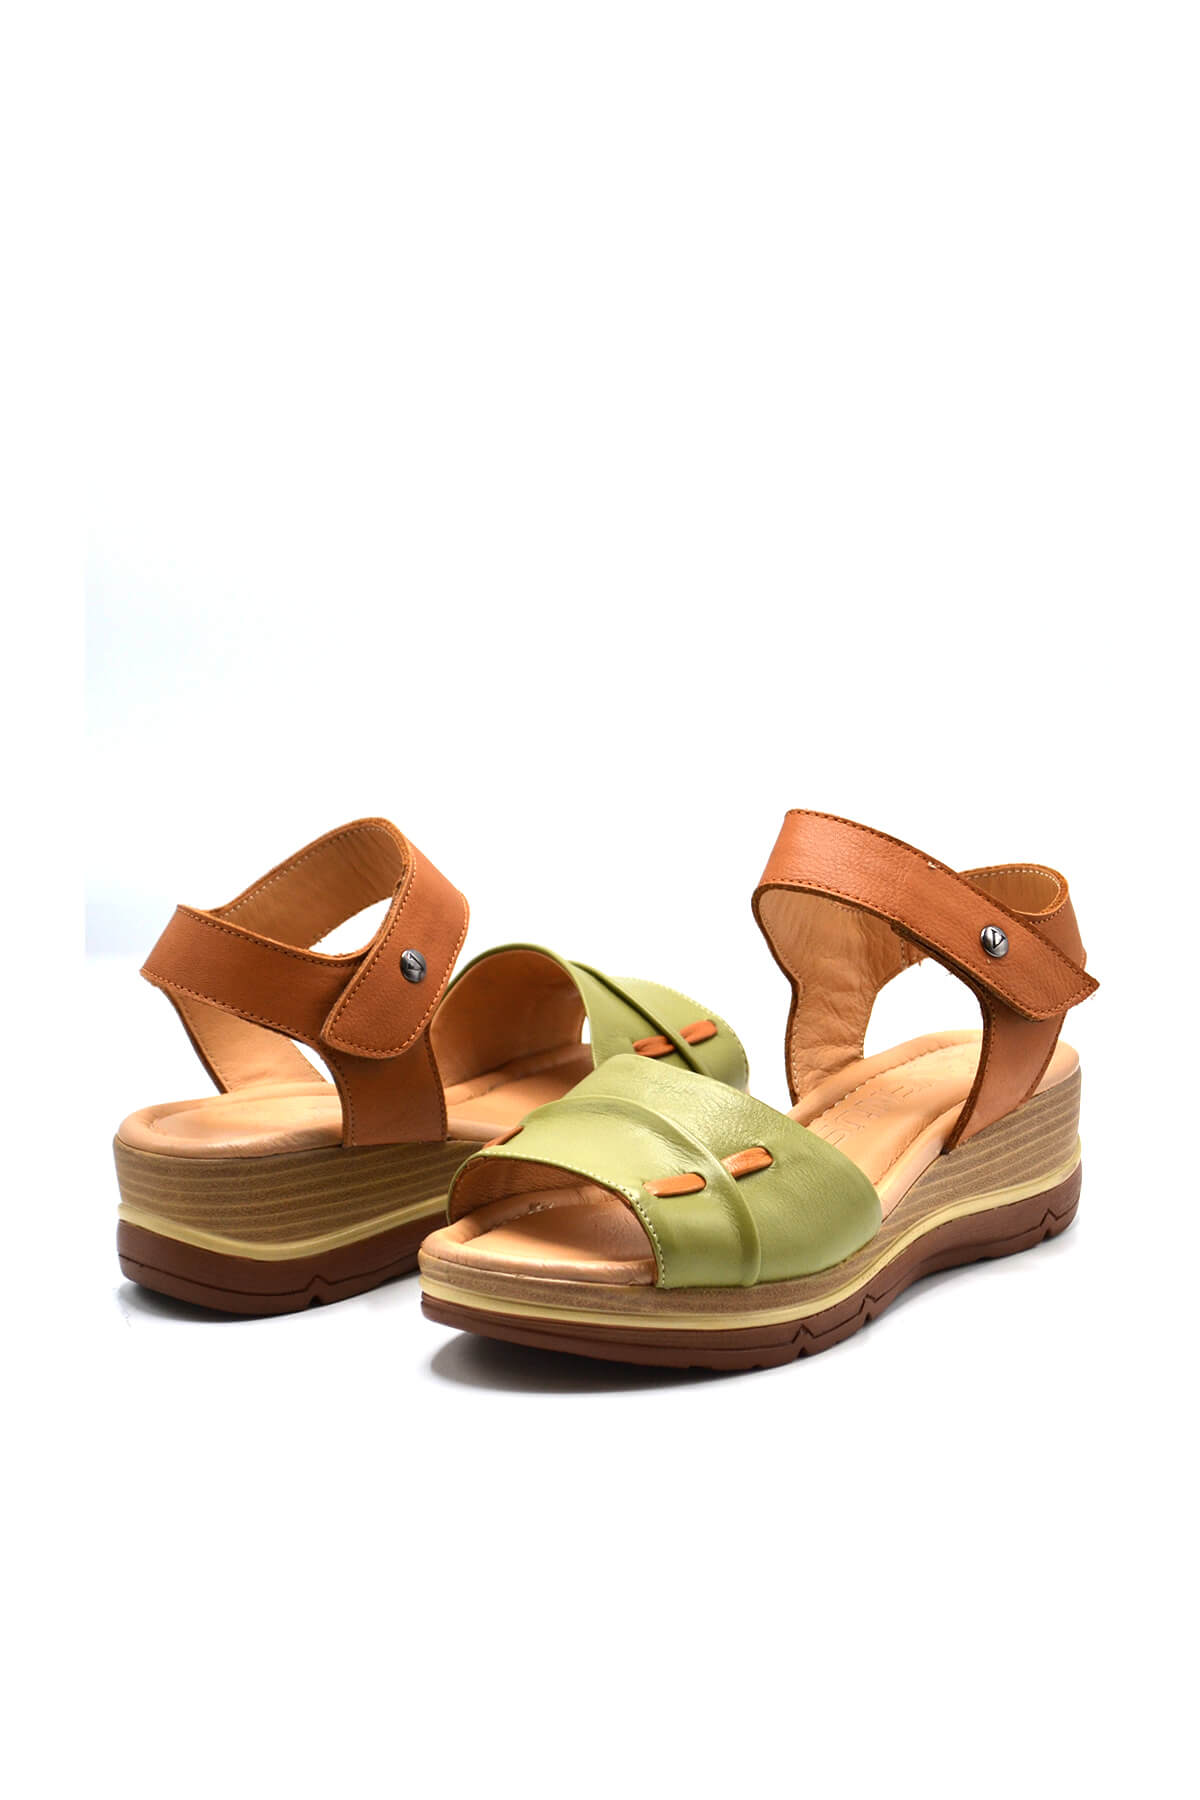 Kadın Comfort Deri Sandalet Fıstık Yeşili 2313402Y - Thumbnail